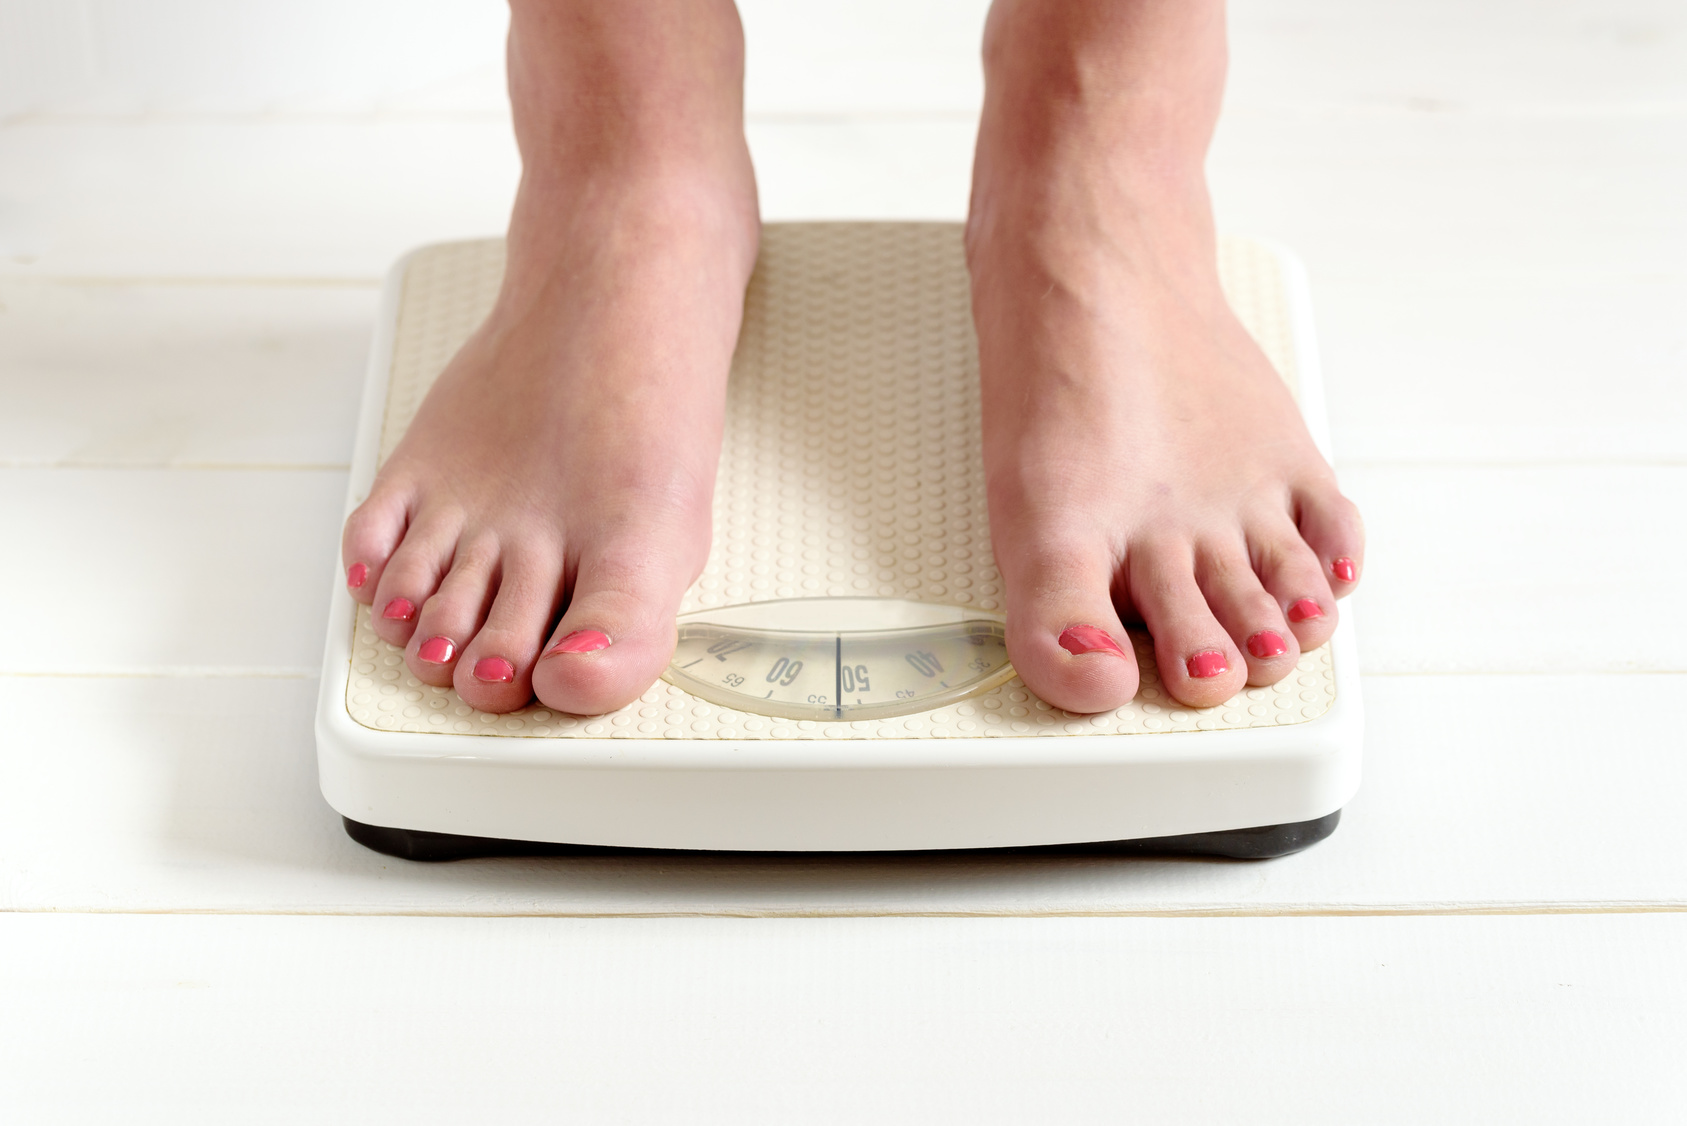 Perdre du poids serait associé à de bons résultats contre le vieillissement du cerveau chez les personnes obèses. © vivoo, fotolia